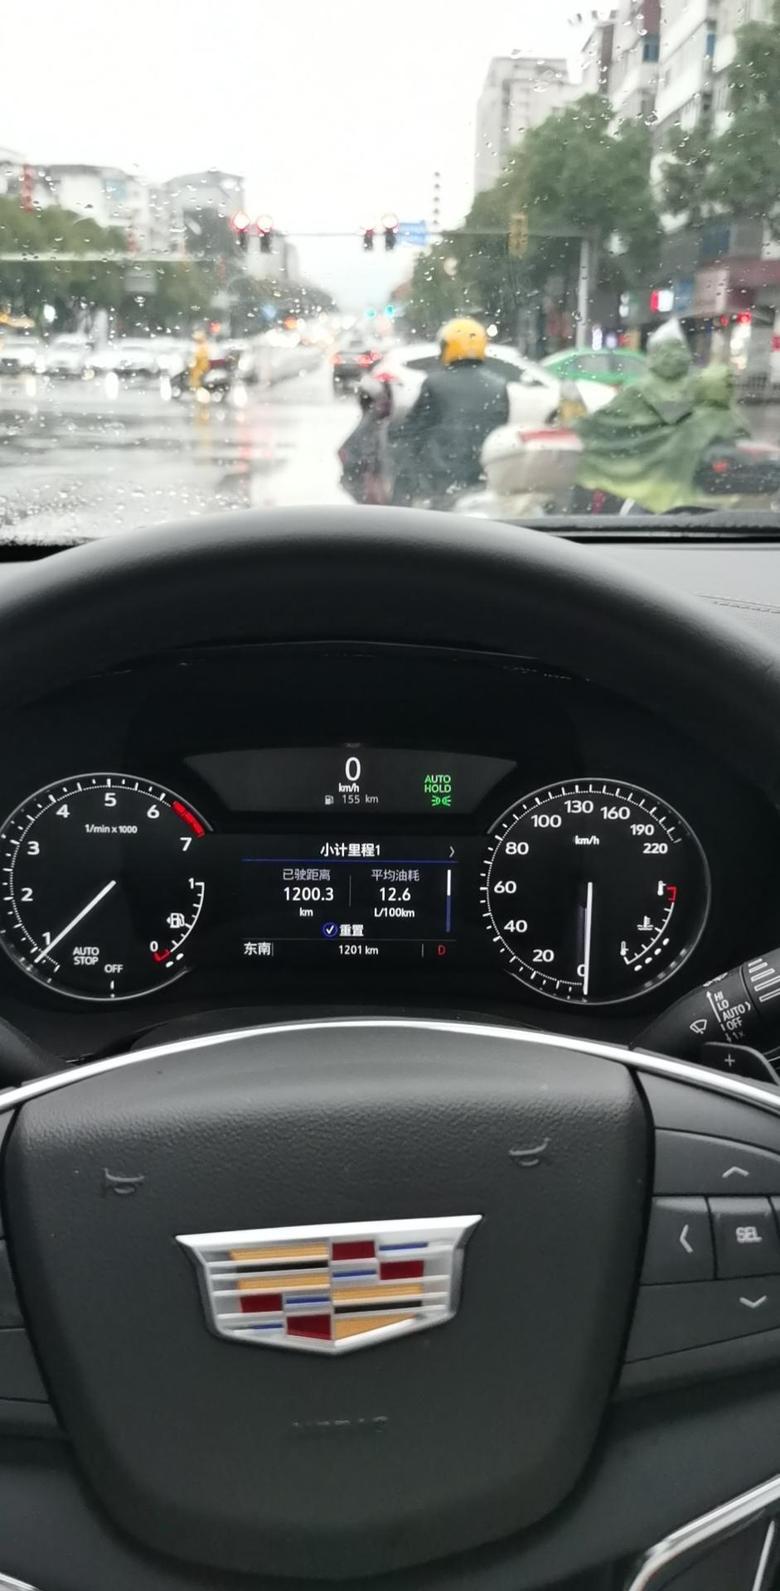 凯迪拉克xt5 跑了1000多公里纯市区路段，12.5的油耗，现在还会有点提高，看走不走拥堵路段，说实话能接受。毕竟那么重的车